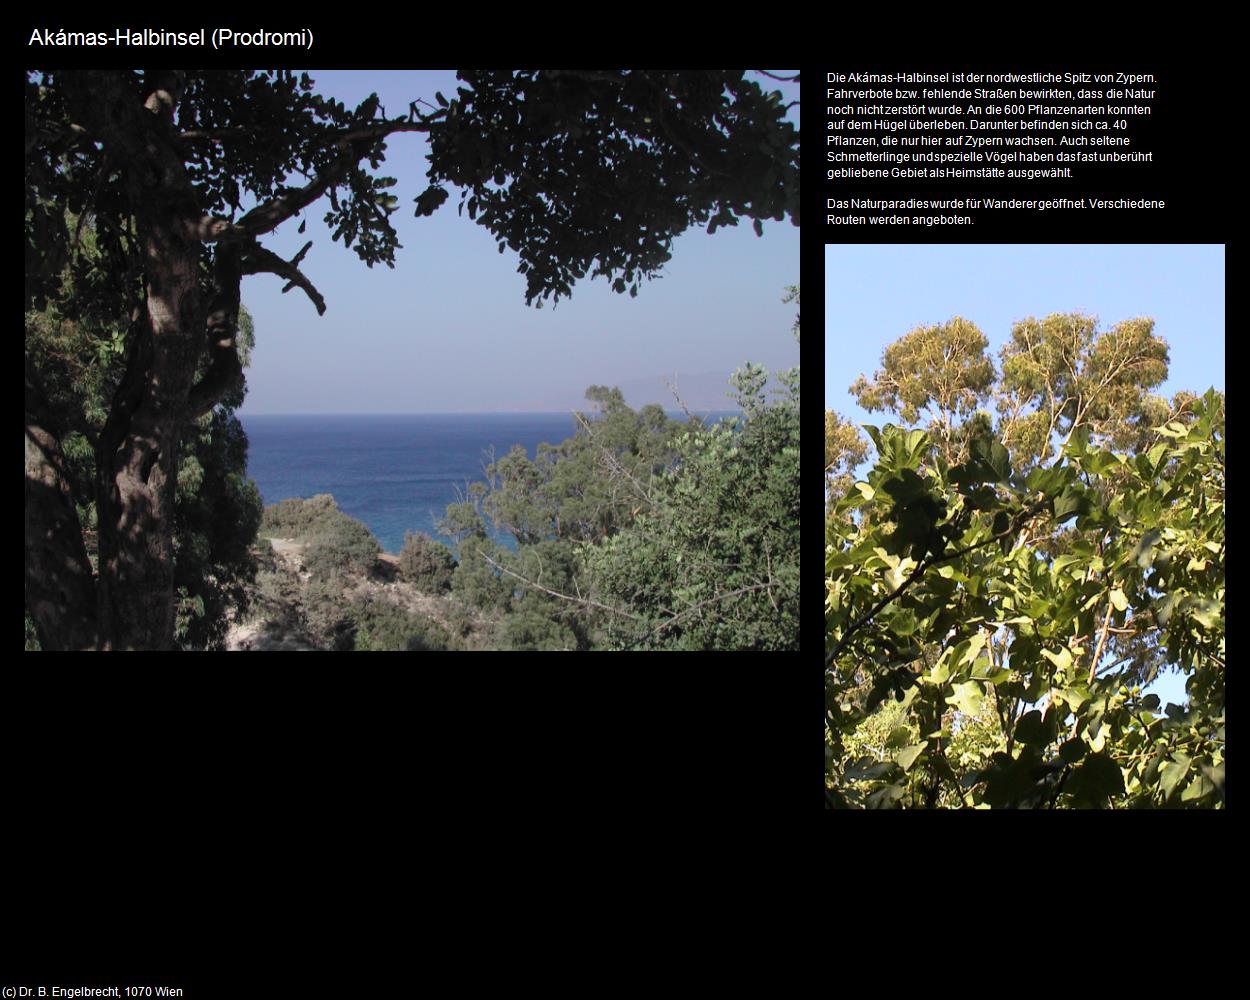 Akámas-Halbinsel (Prodromi) in ZYPERN-Insel der Aphrodite